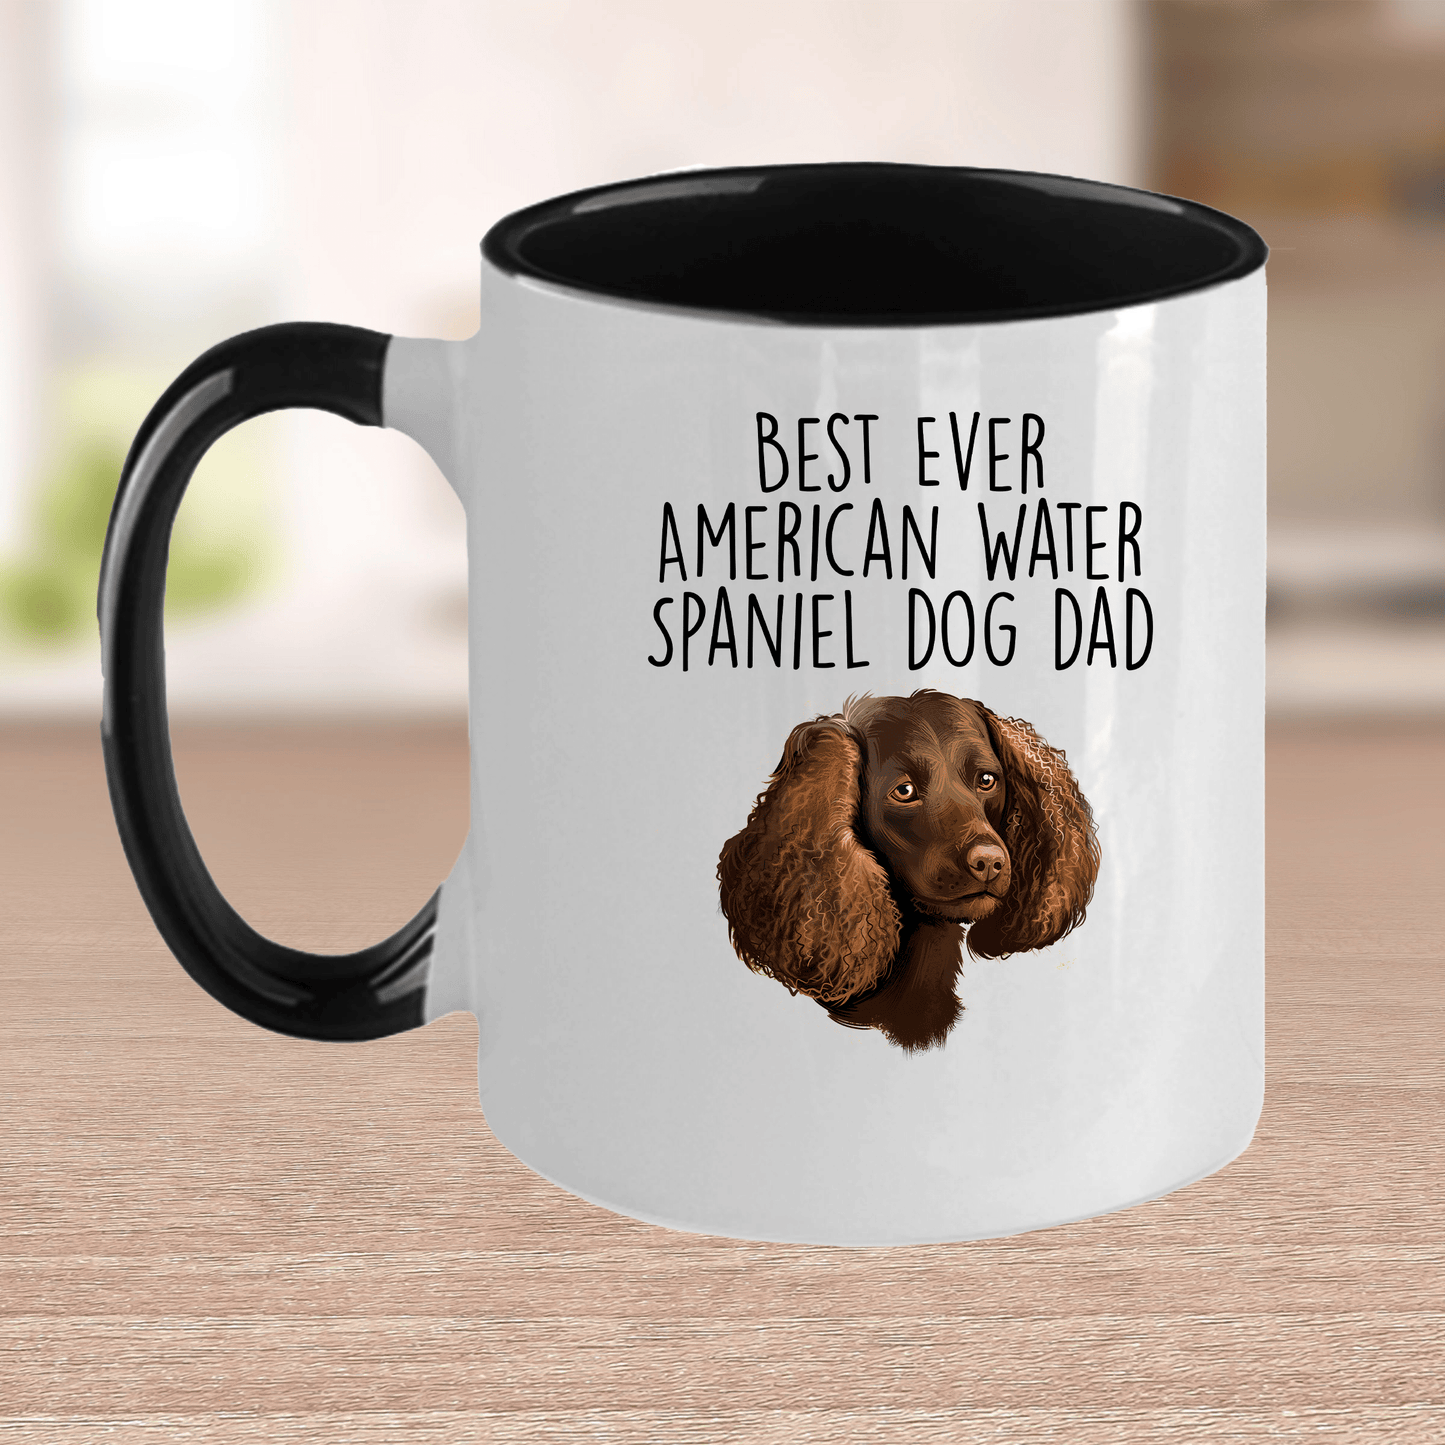 Best Ever American Water Spaniel Dog Dad Ceramic Coffee Mug